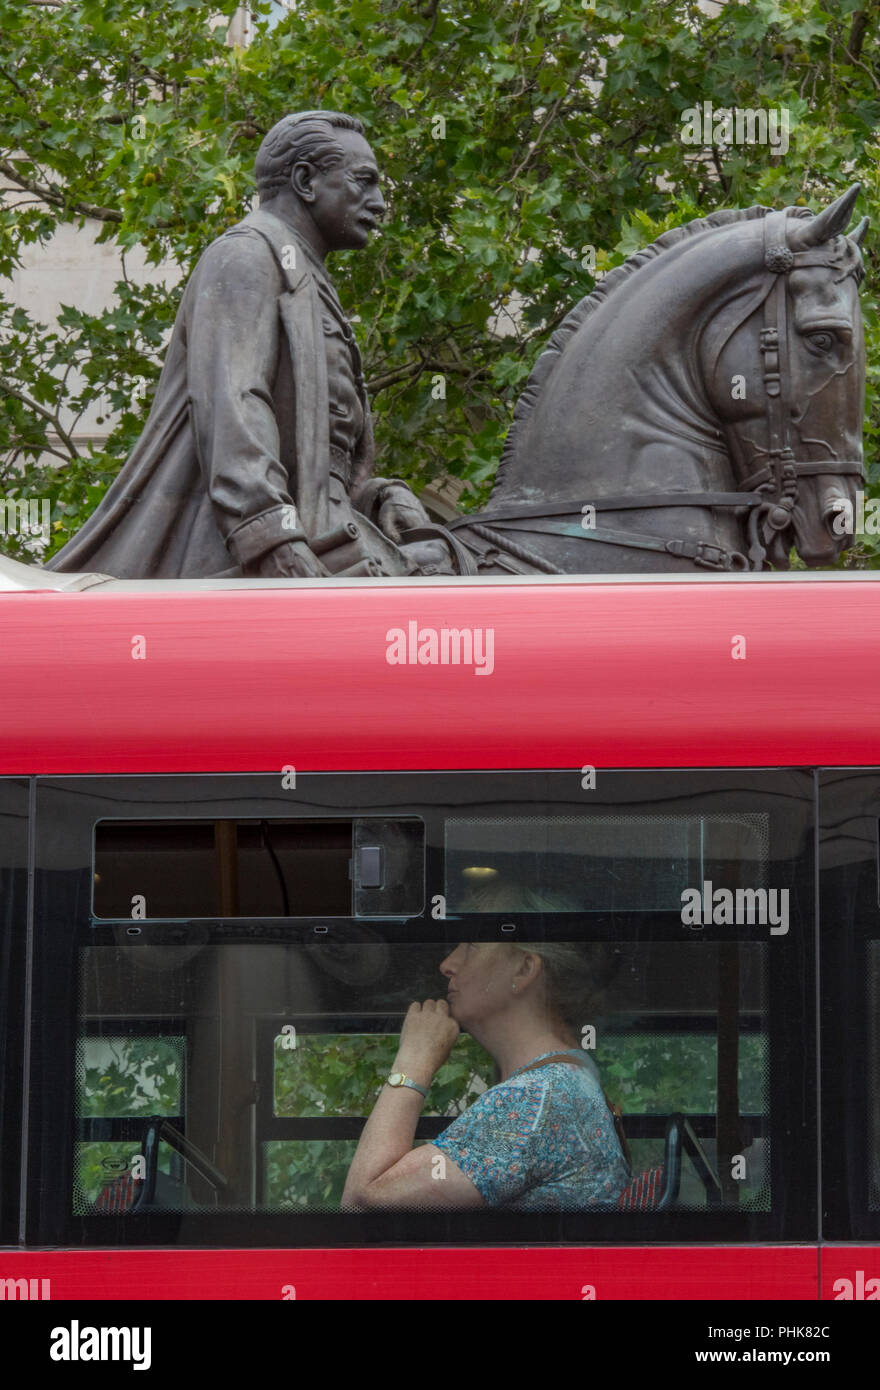 Uomo seduto sul ponte superiore di una tradizionale rosso lonon double-decker bus con montato un cavaliere statua dietro o in background. divertente immagine. Foto Stock